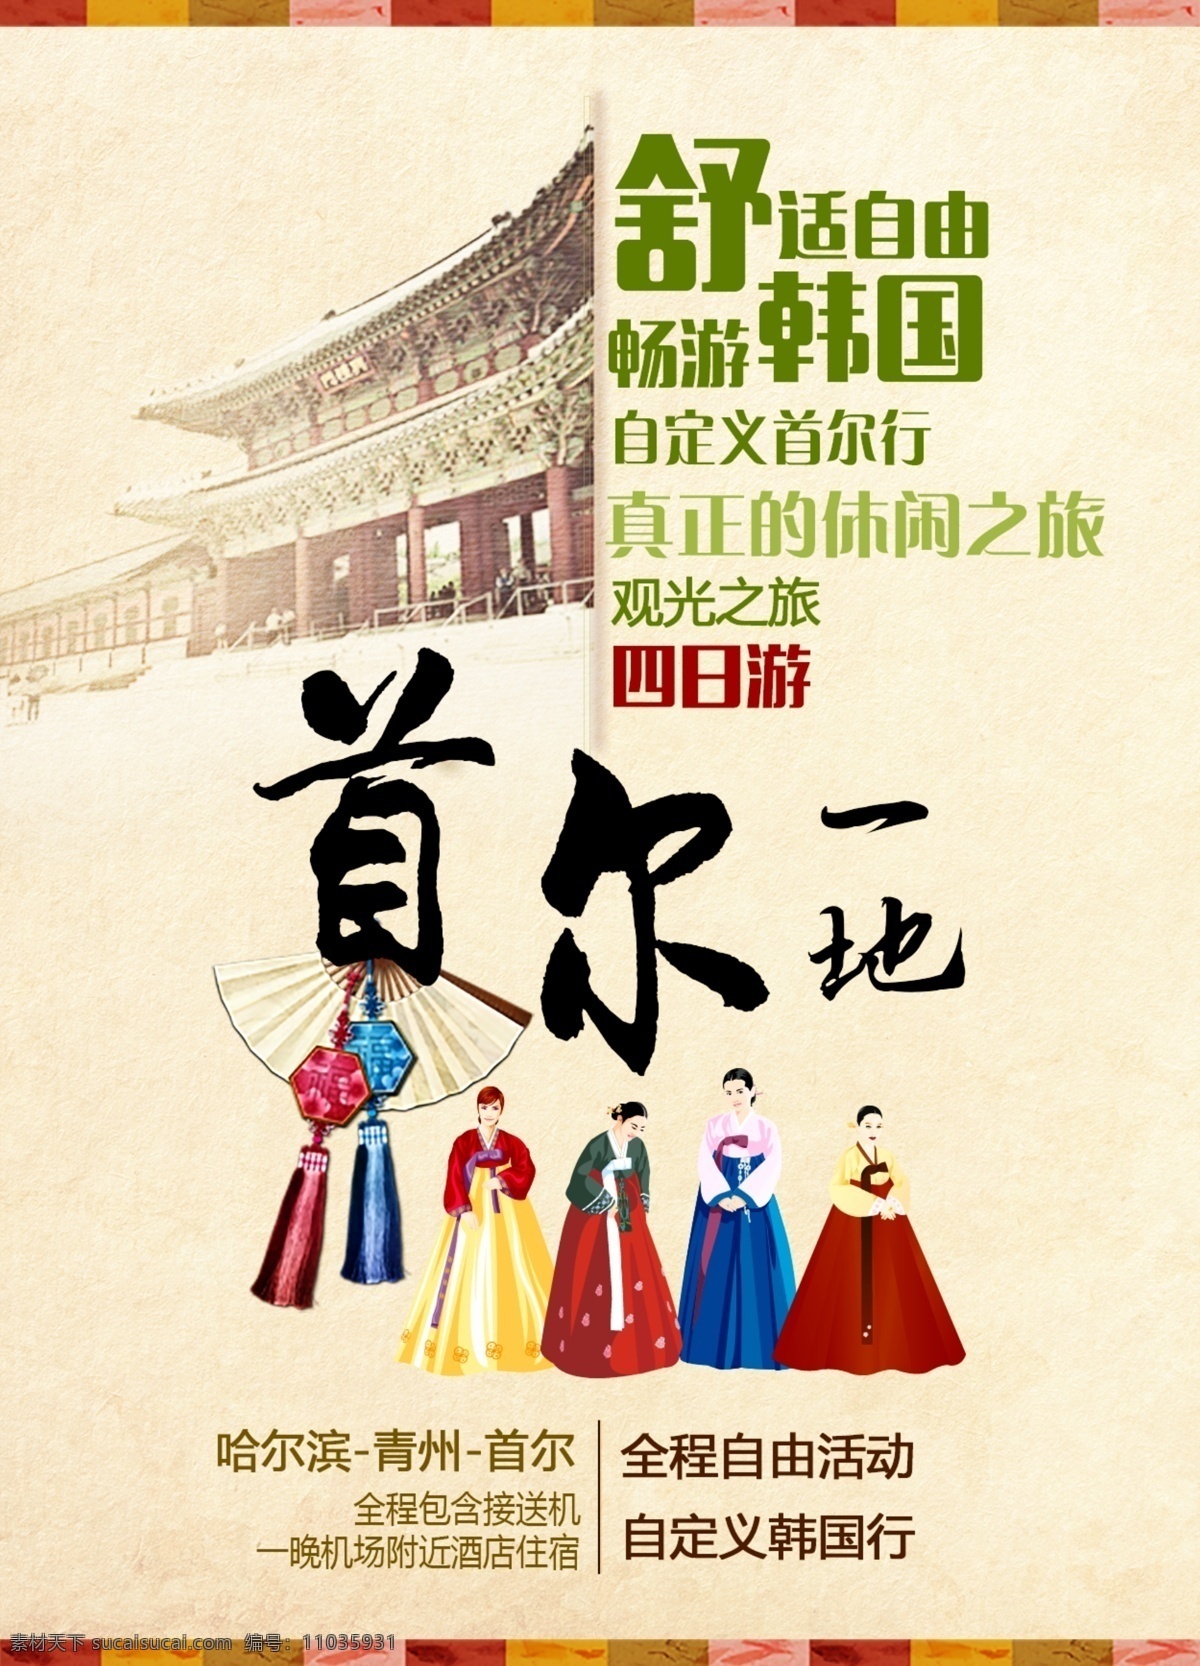 韩国 首 尔 旅游 海报 首尔 景福宫 济州岛 明洞 泡菜 自由行 旅游海报